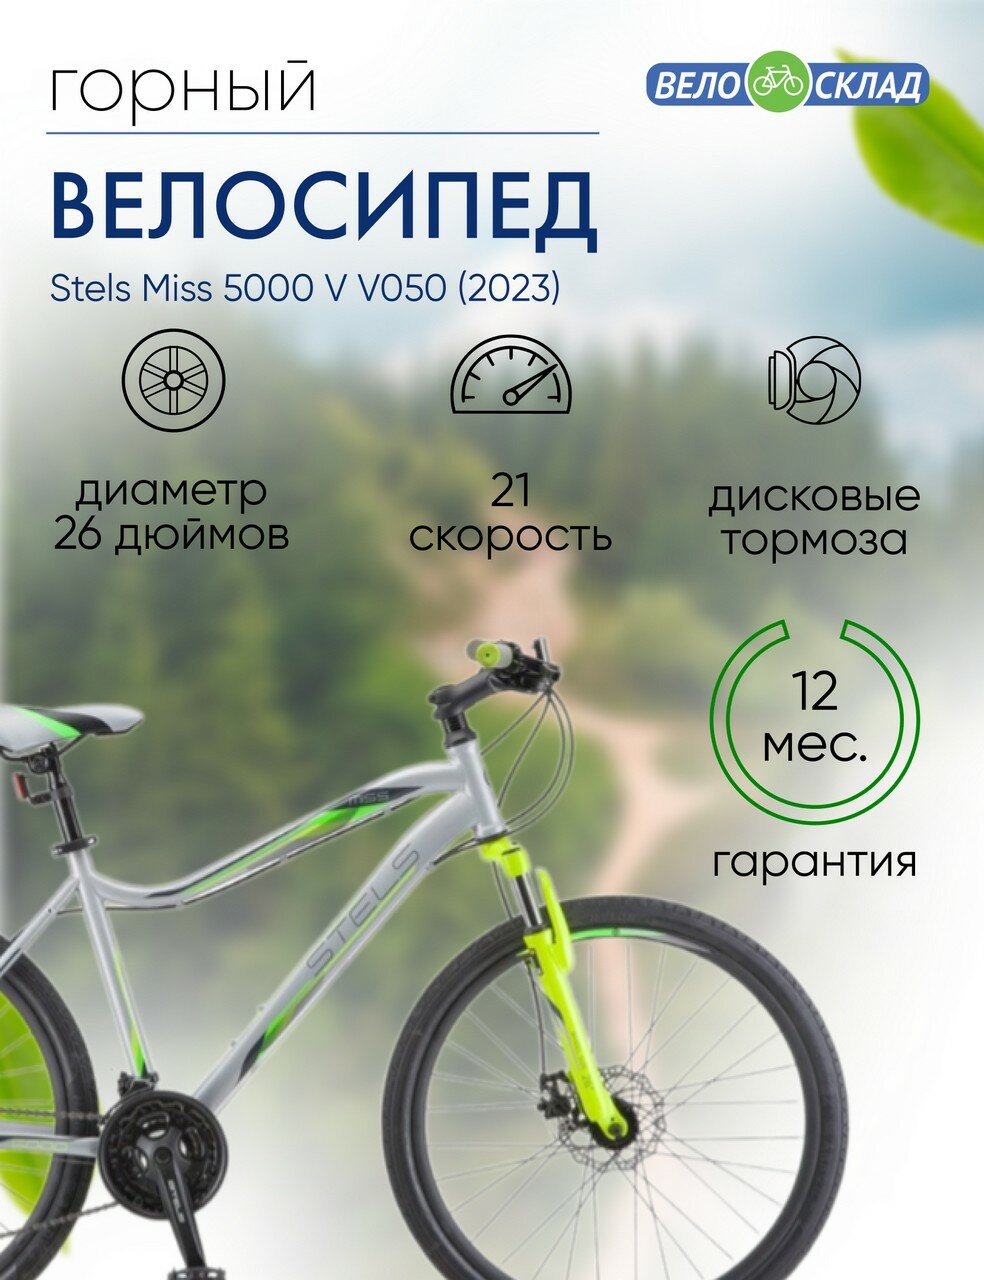 Женский велосипед Stels Miss 5000 V V050 год 2023 цвет Серебристый-Зеленый ростовка 18